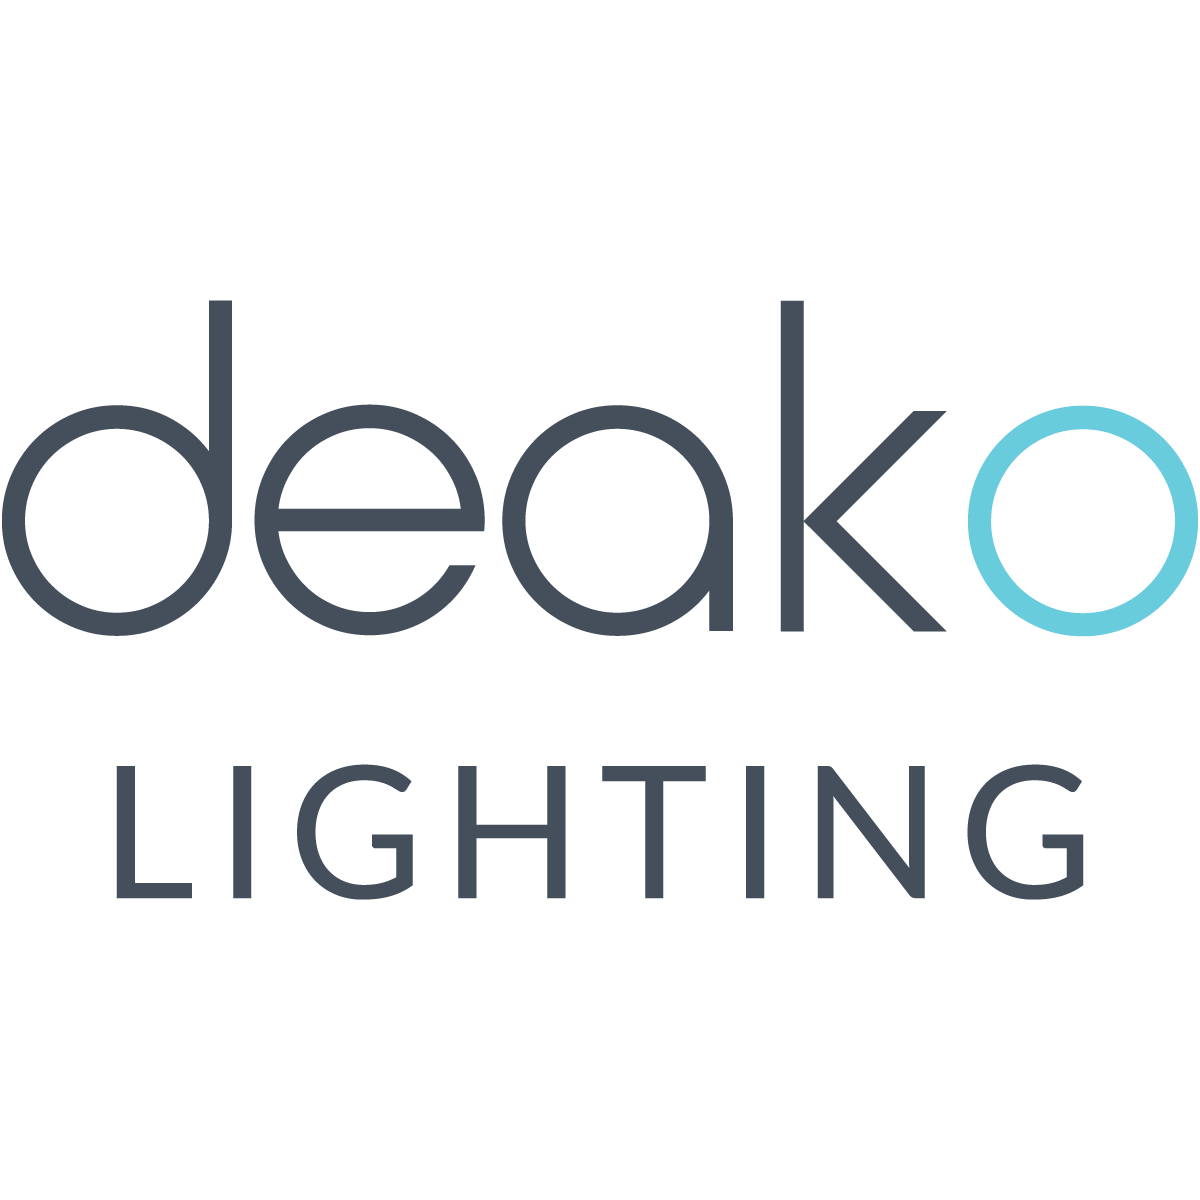 Deako Lighting